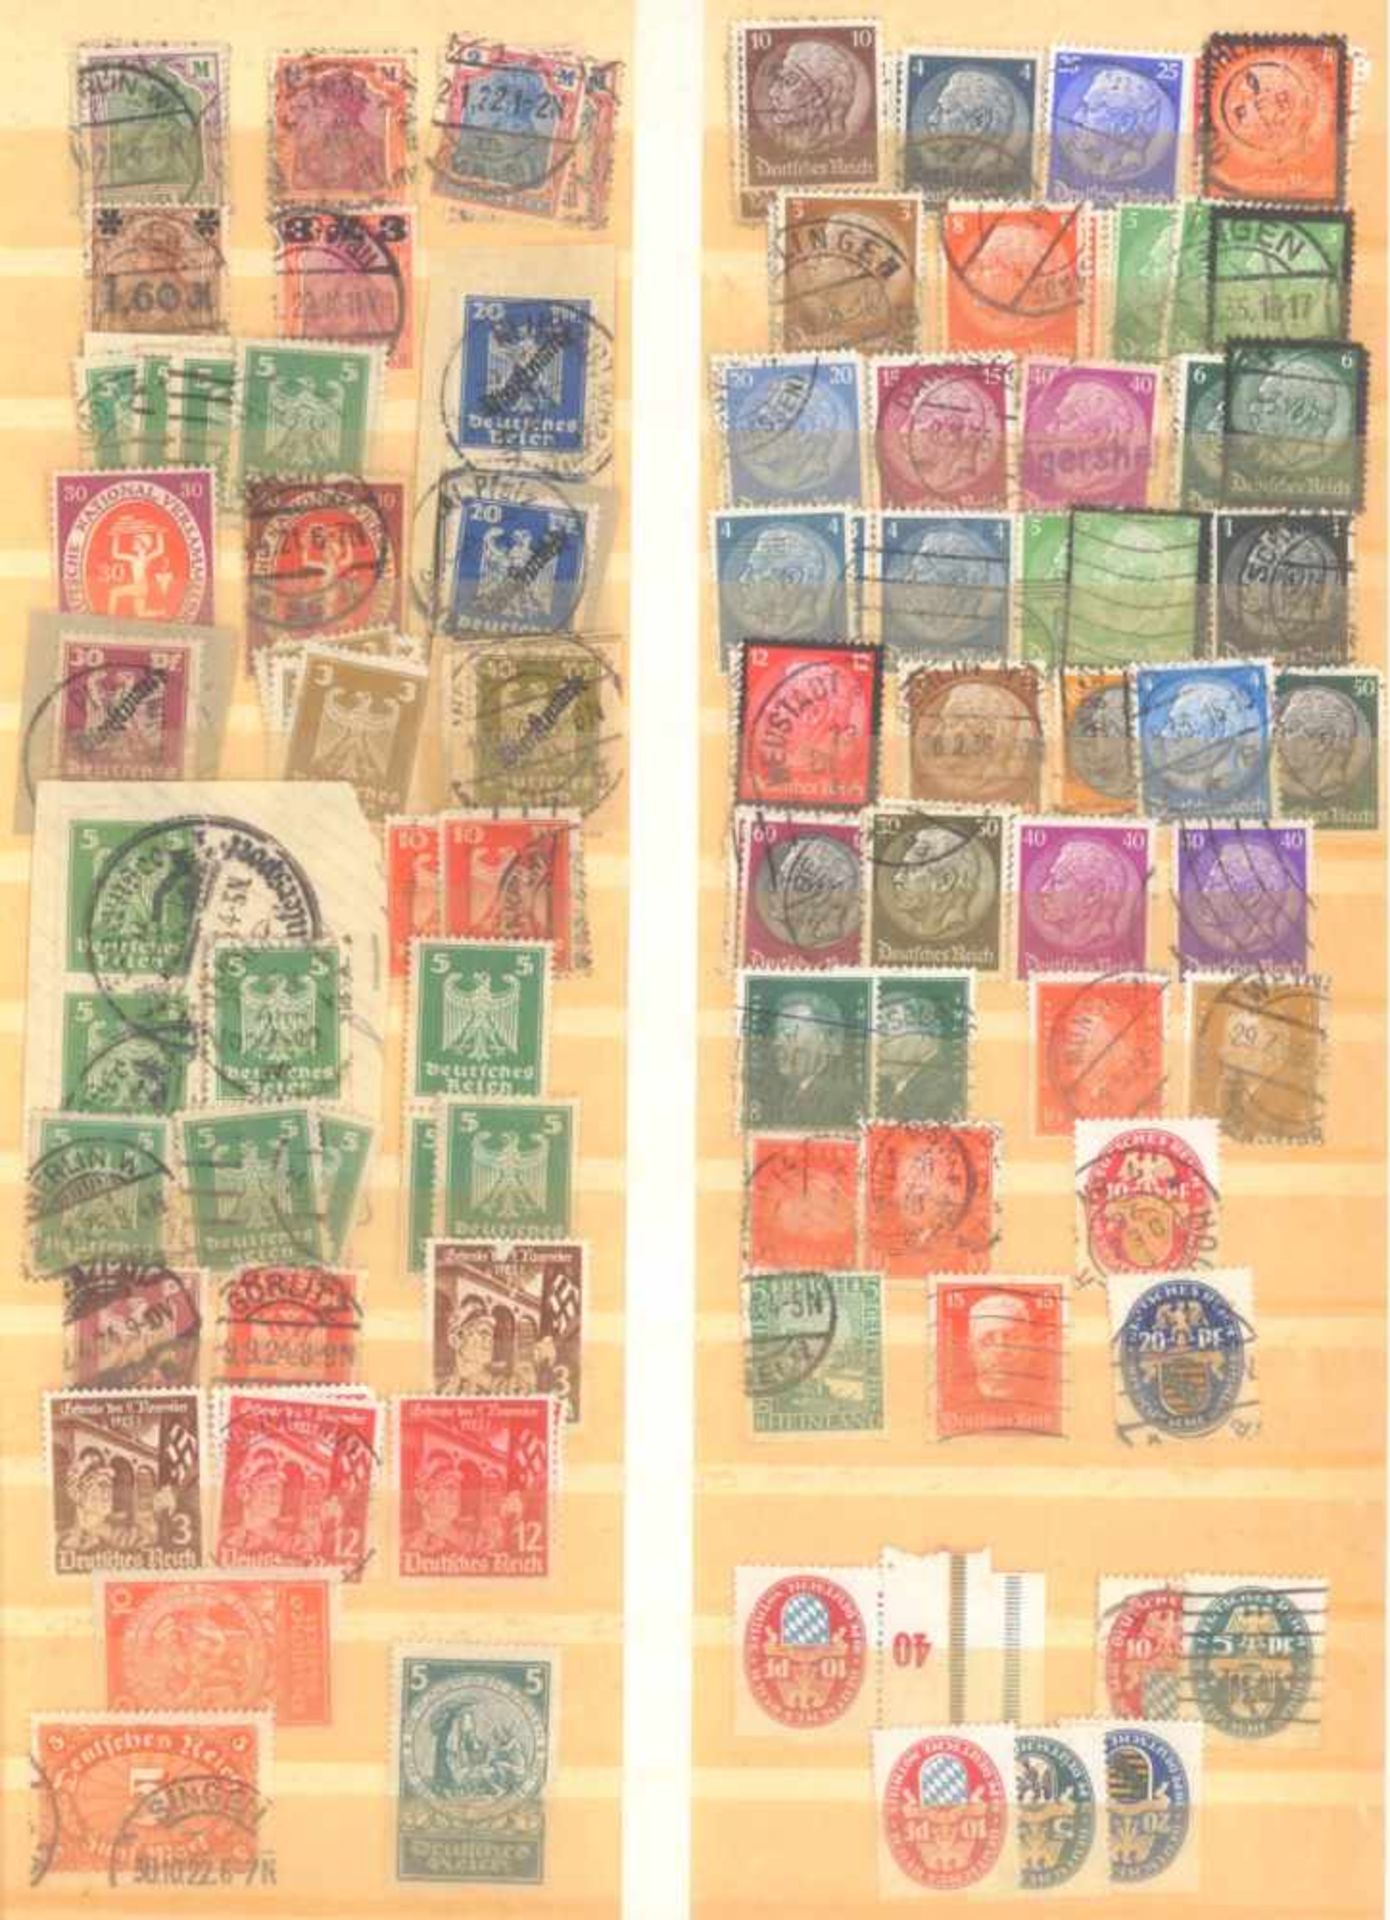 FRANKENTHALER NACHLASSuriger Nachlass mit Briefmarken und Belegen. Dabei DeutschesReich, altes - Image 7 of 46